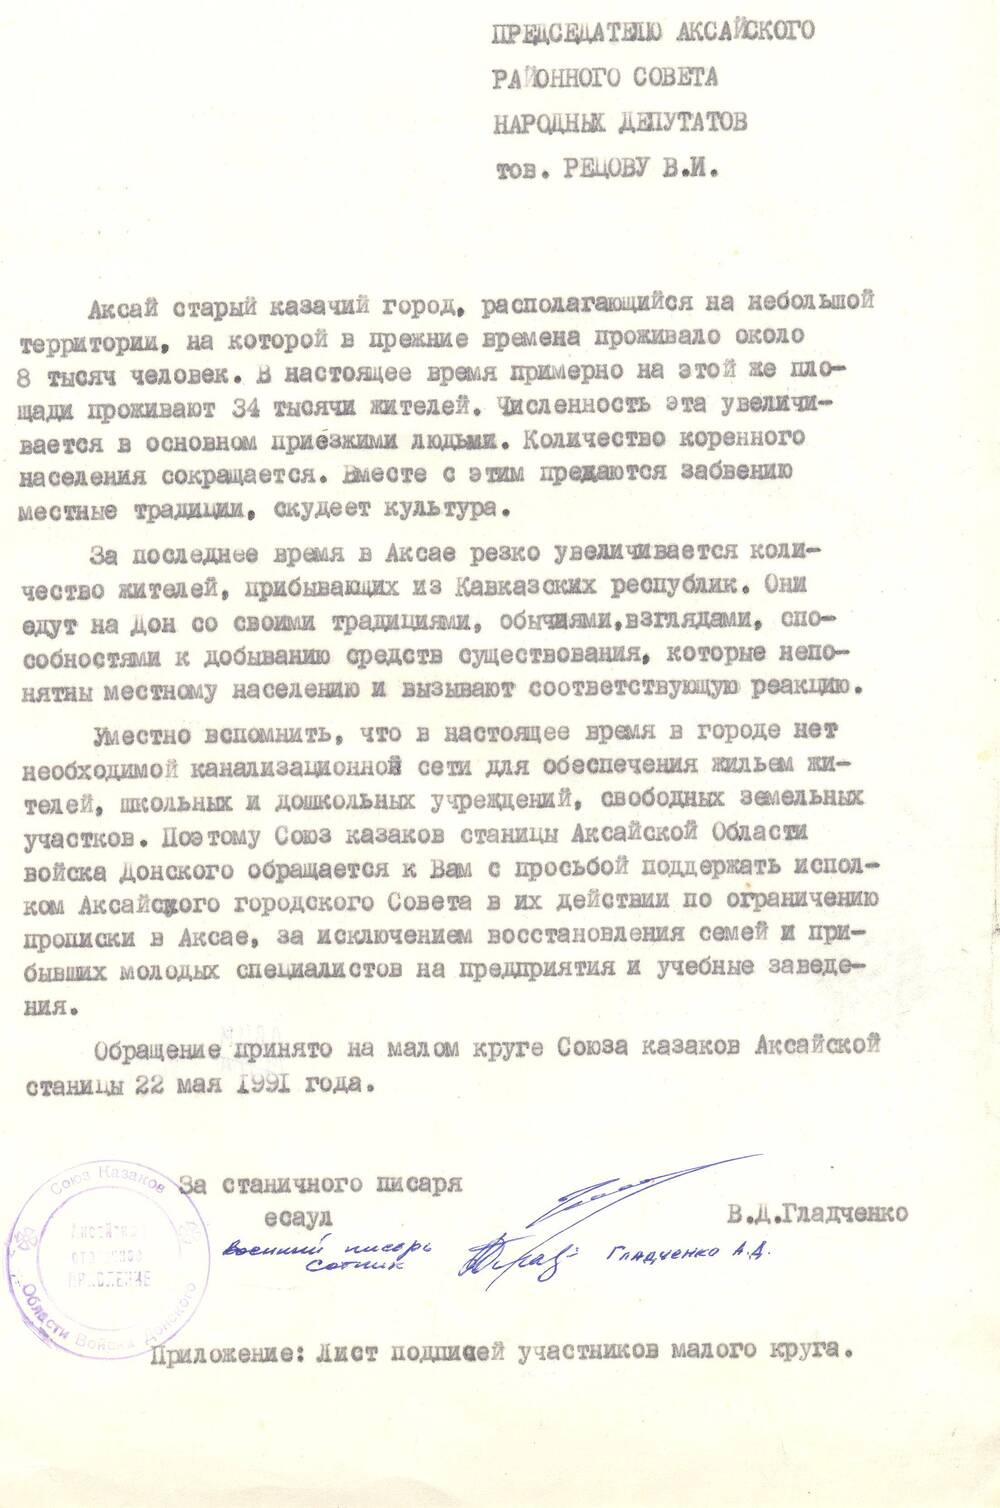 Письмо Рецову об ограничении прописки в Аксае для лиц из кавказских республик.